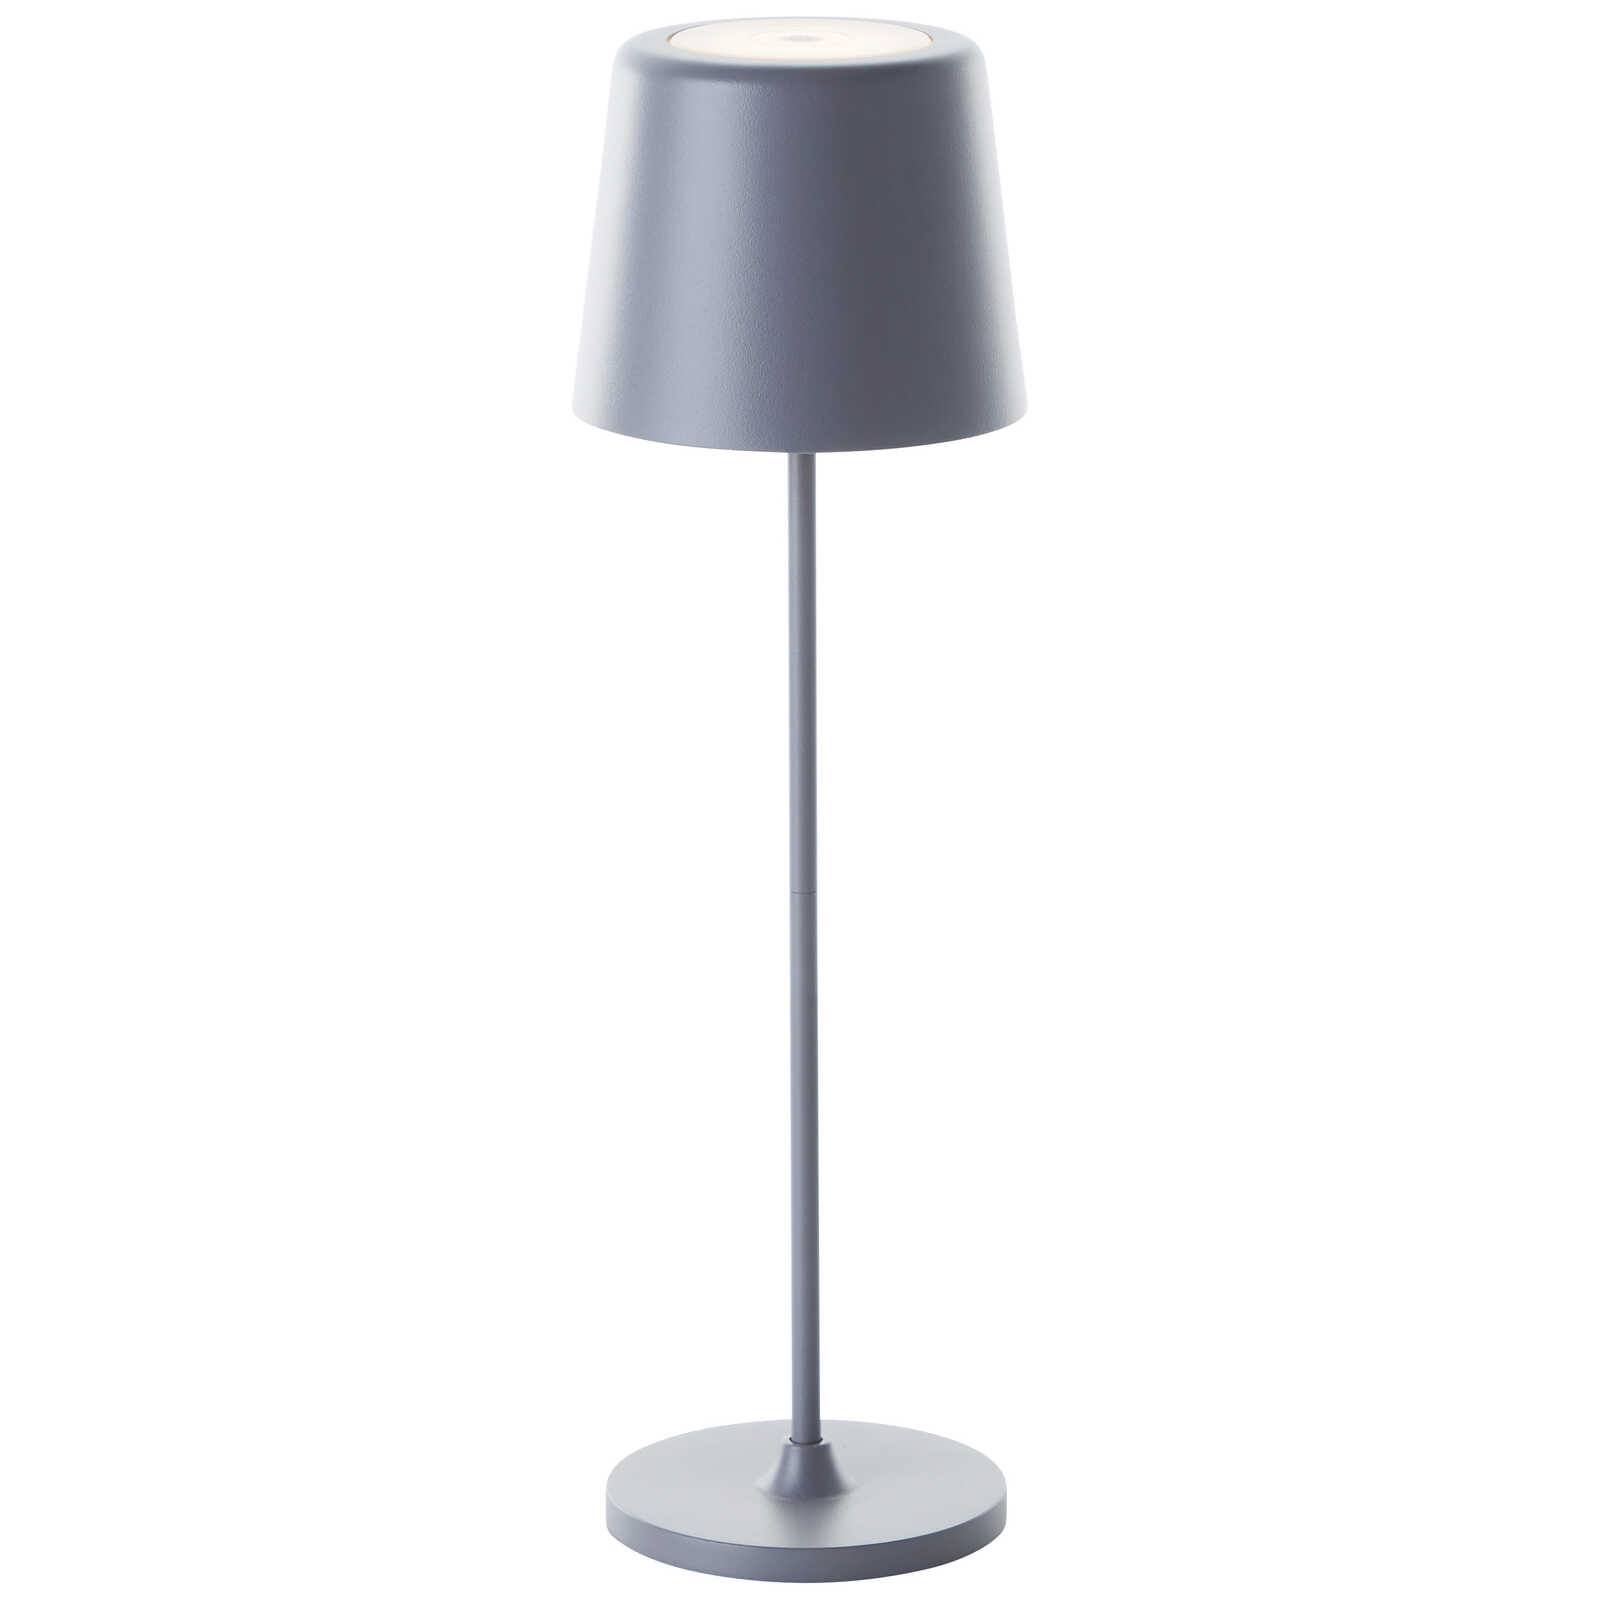             Metalen tafellamp - Cosy 4 - Grijs
        